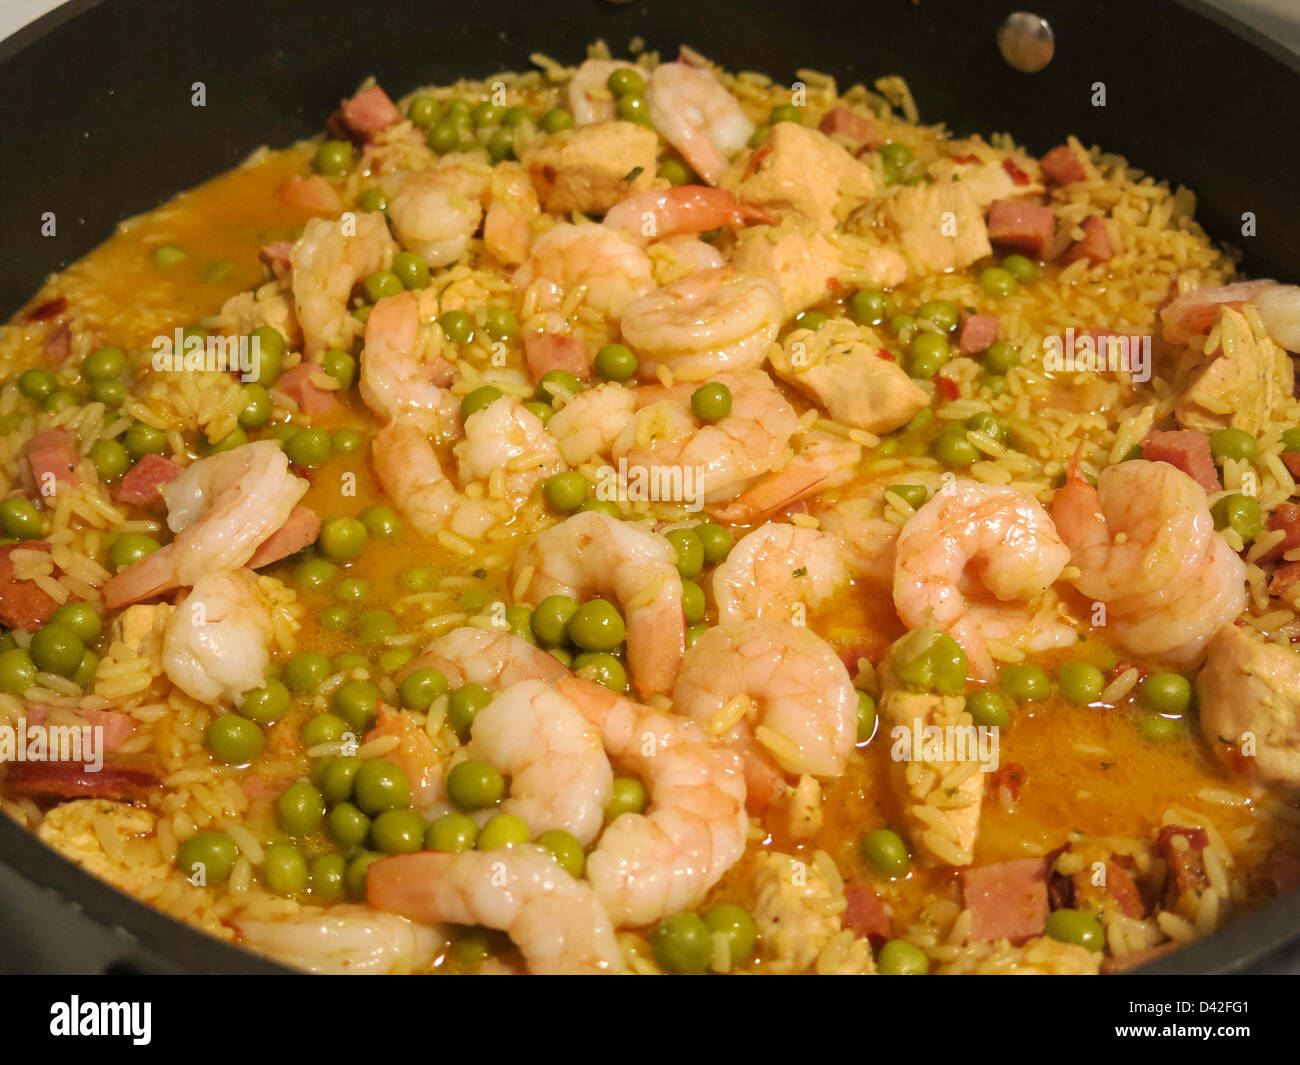 Spanische Paella, Reisgericht, valencianische Hauptgericht Stockfoto